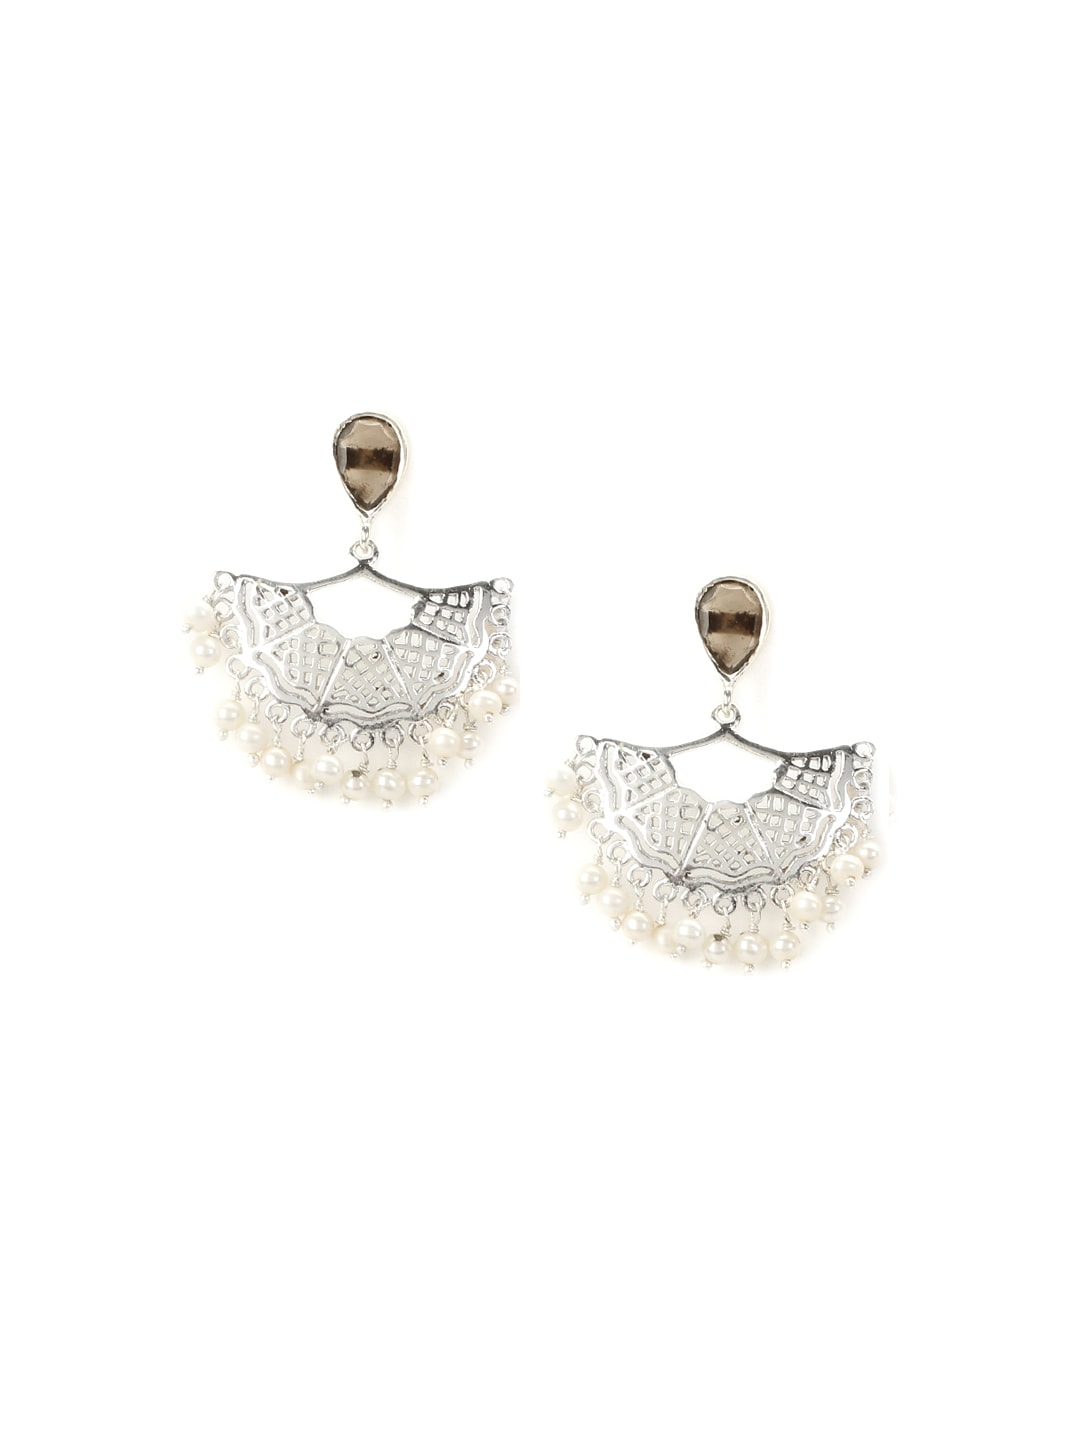 Rreverie Silver & White Earrings